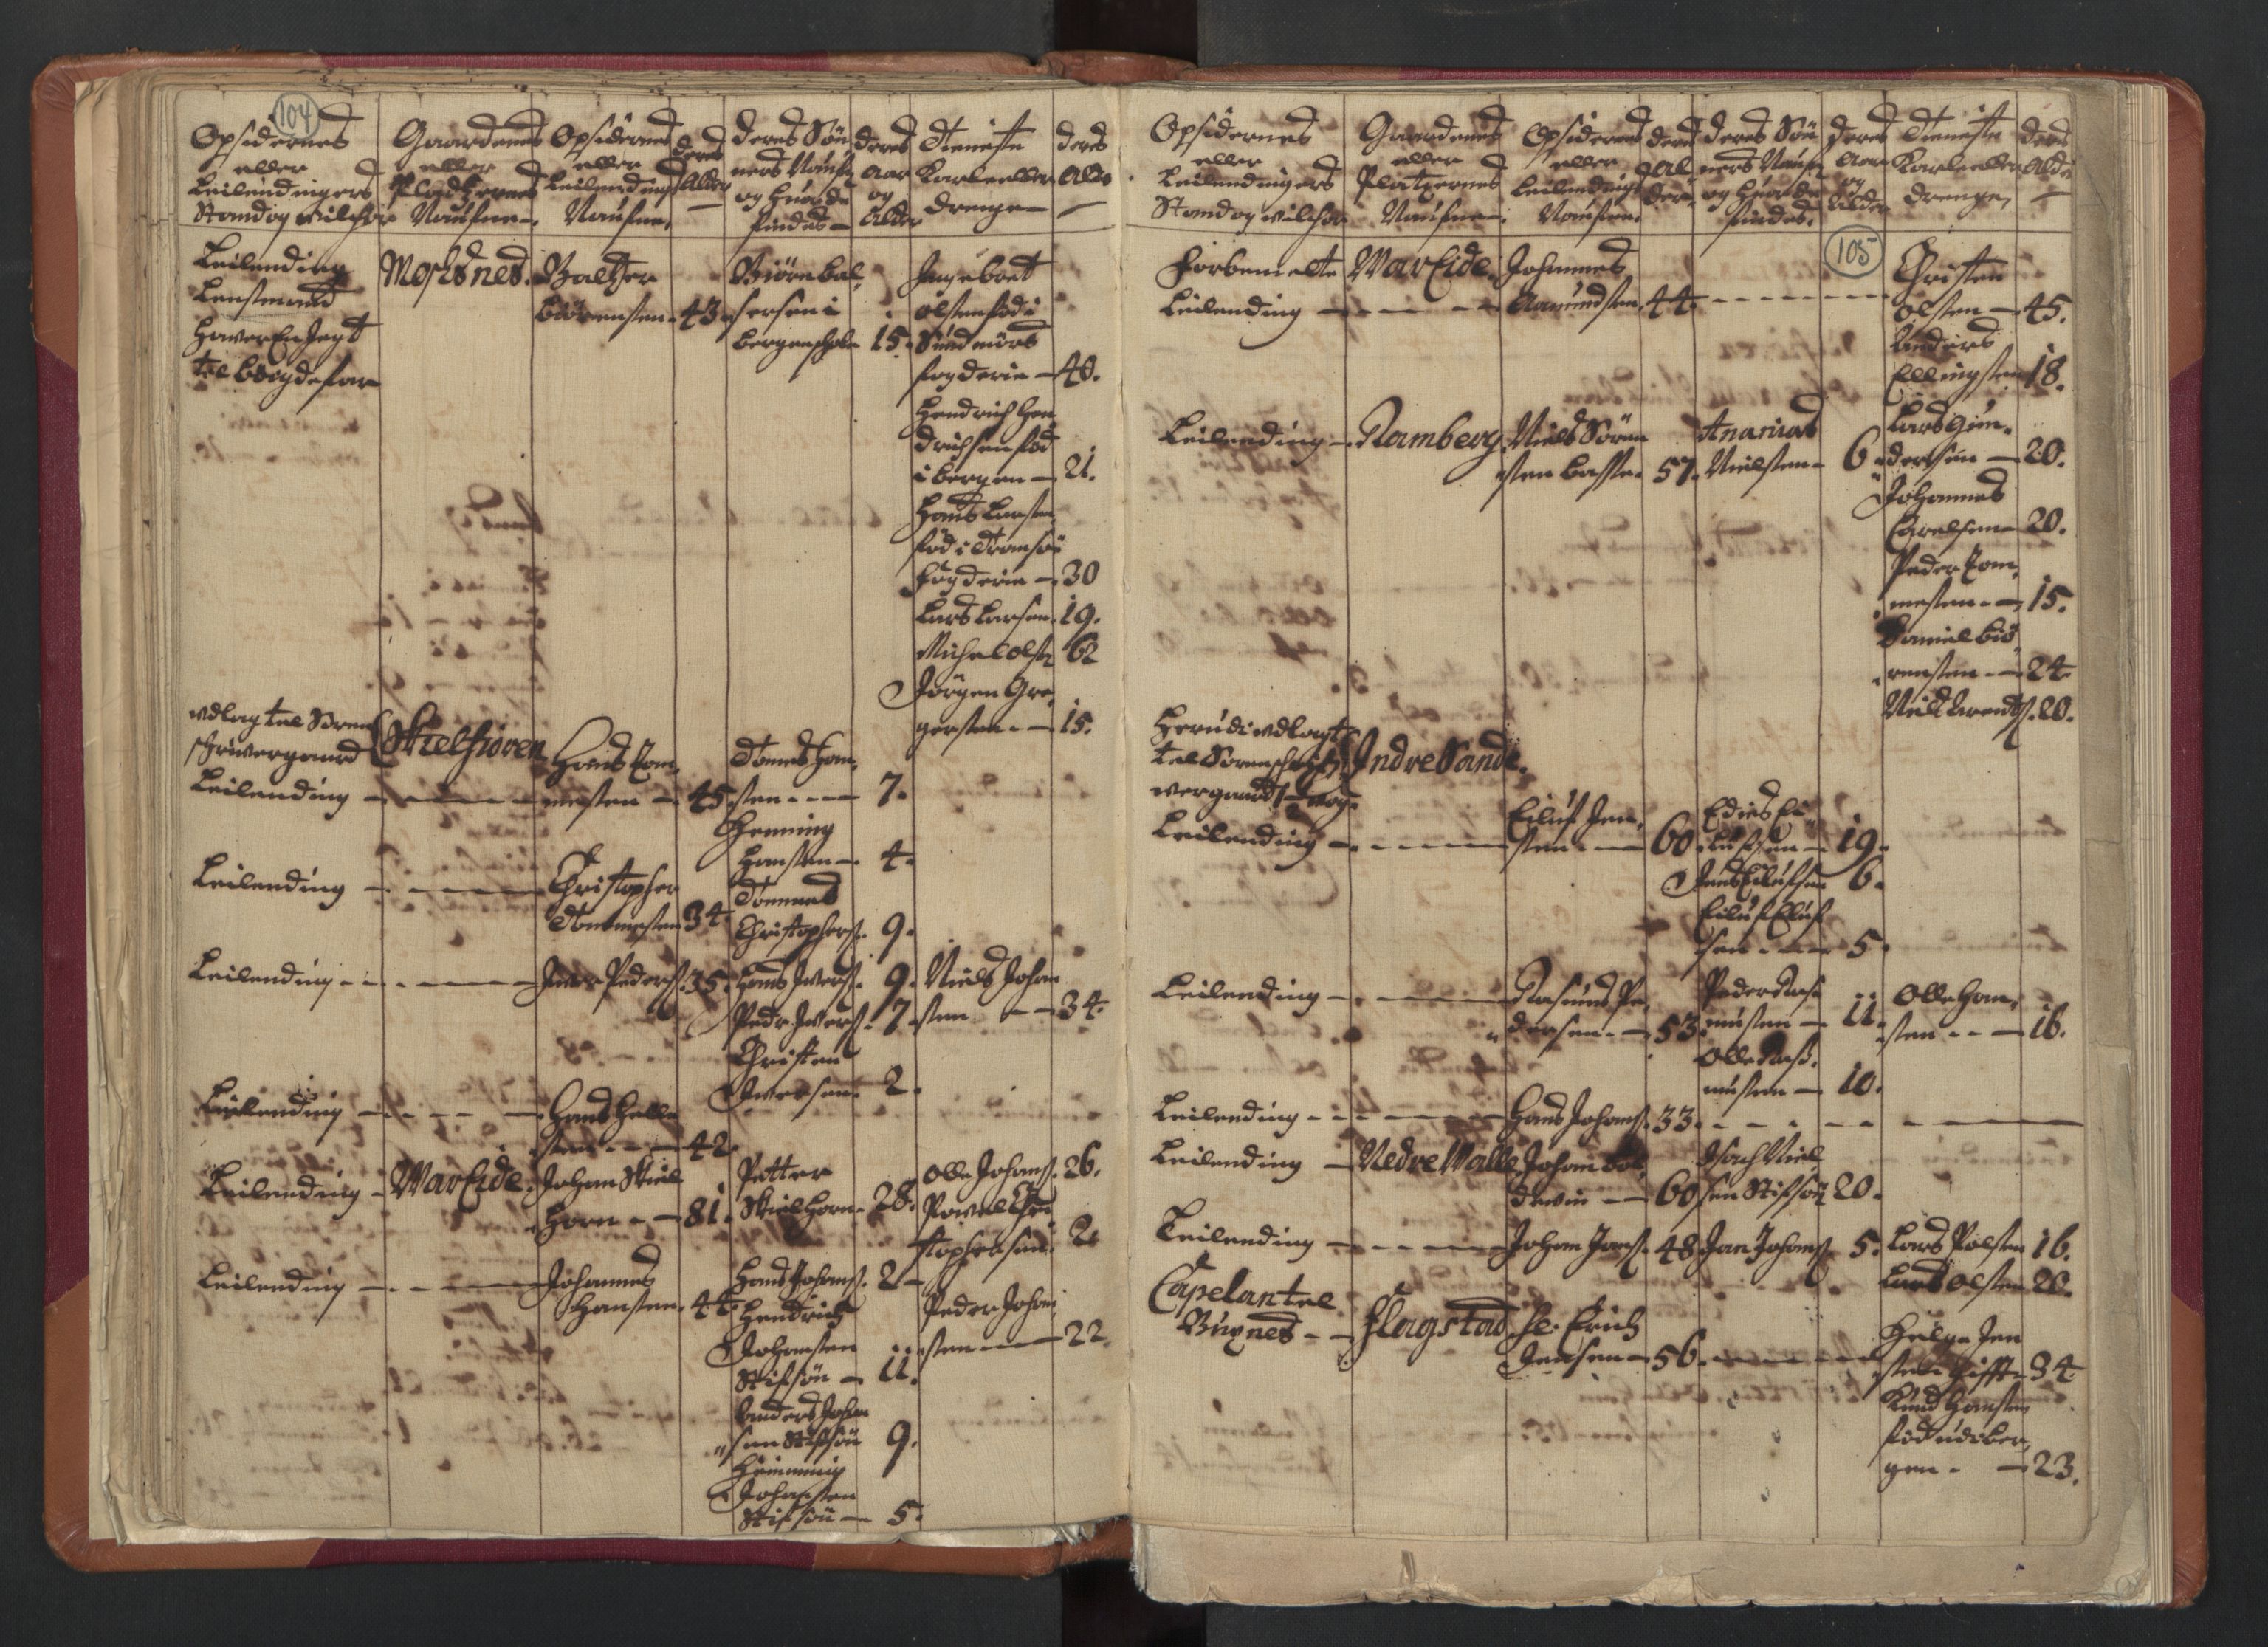 RA, Census (manntall) 1701, no. 18: Vesterålen, Andenes and Lofoten fogderi, 1701, p. 104-105